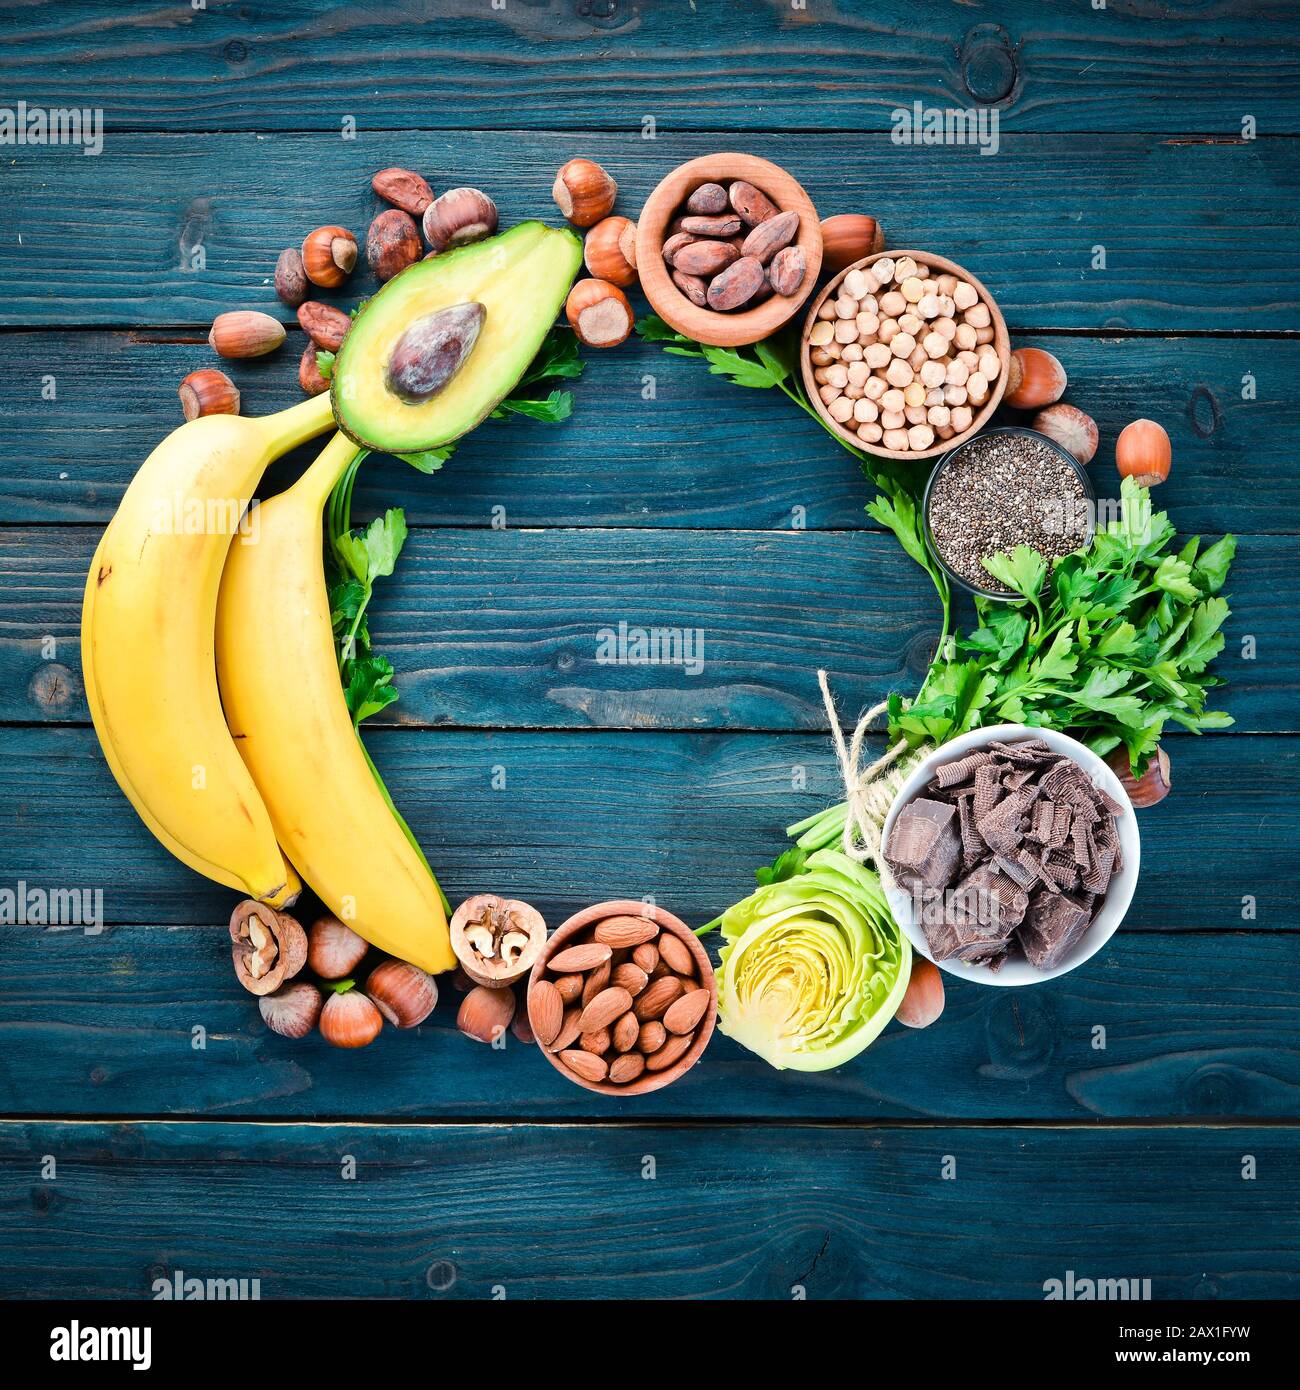 Lebensmittel, die natürliches Magnesium enthalten. Mg: Schokolade, Banane,  Kakao, Nüsse, Avocados, Brokkoli, Mandeln. Draufsicht. Auf blauem  Holzhintergrund Stockfotografie - Alamy